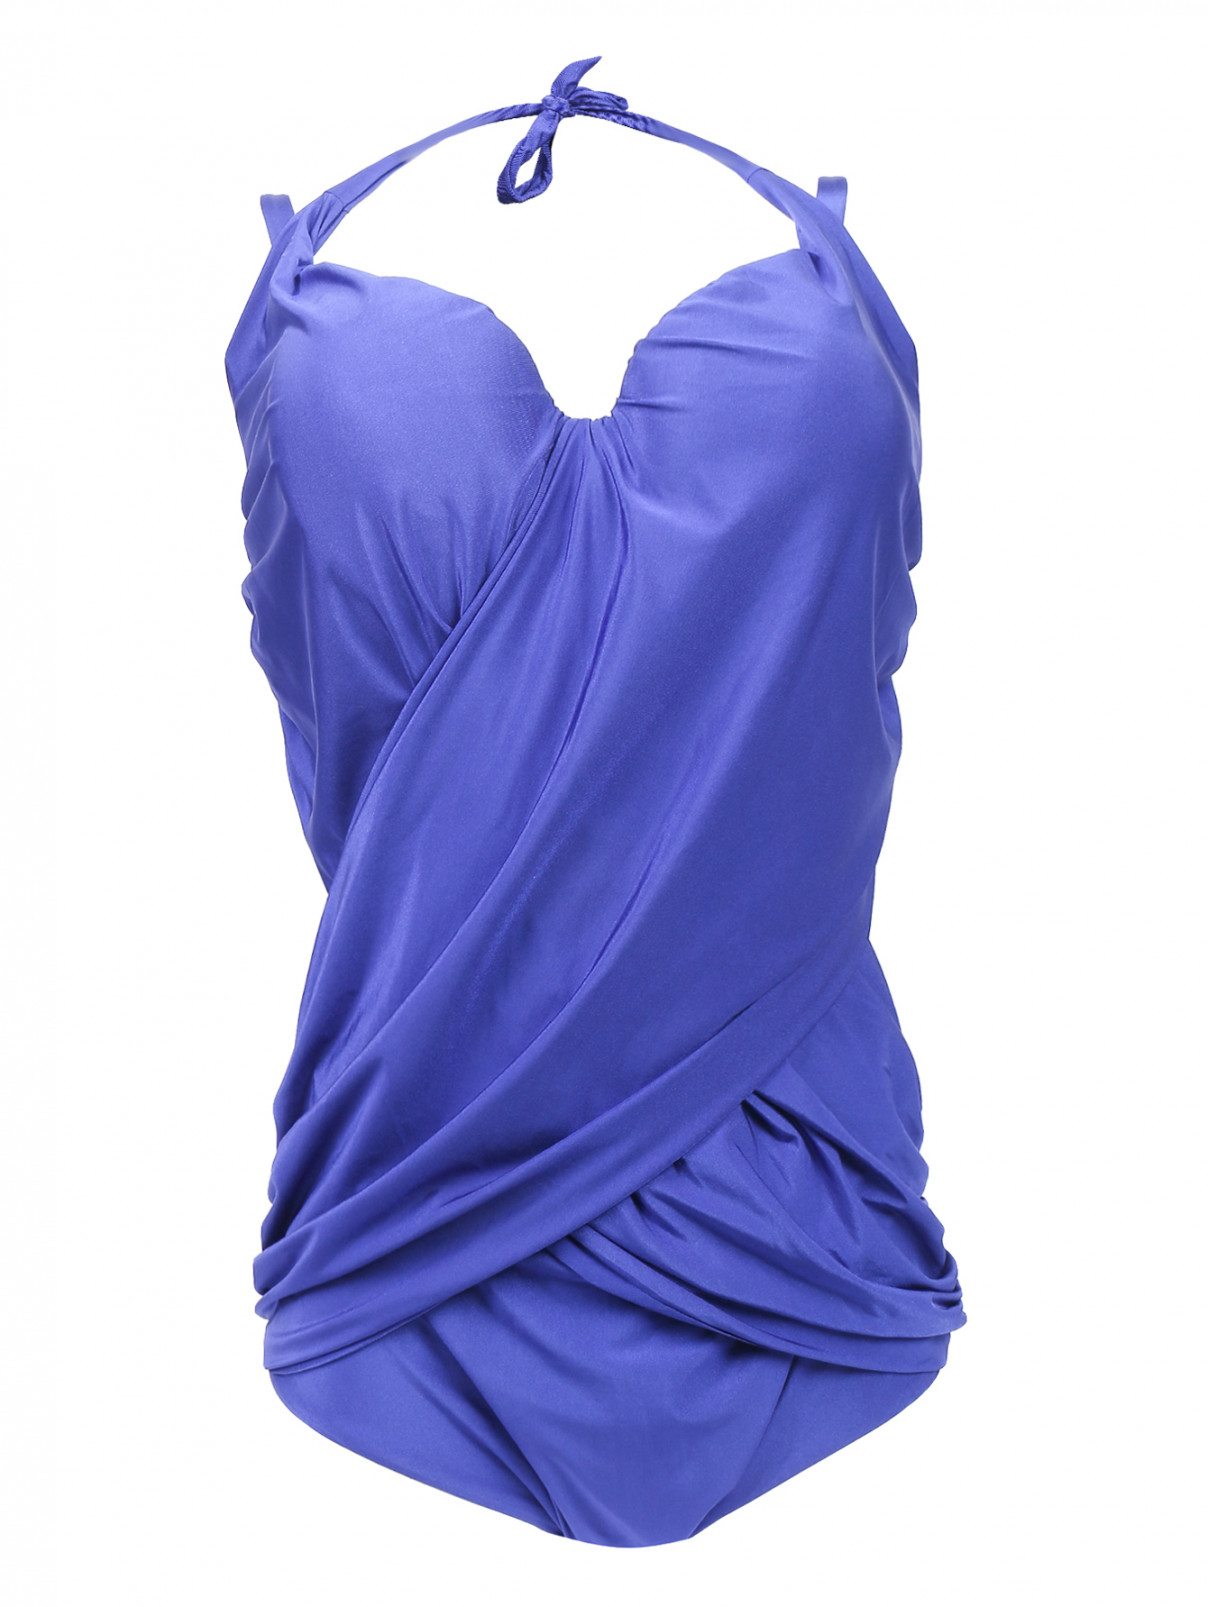 Купальник слитный с драпировкой Marina Rinaldi  –  Общий вид  – Цвет:  Синий